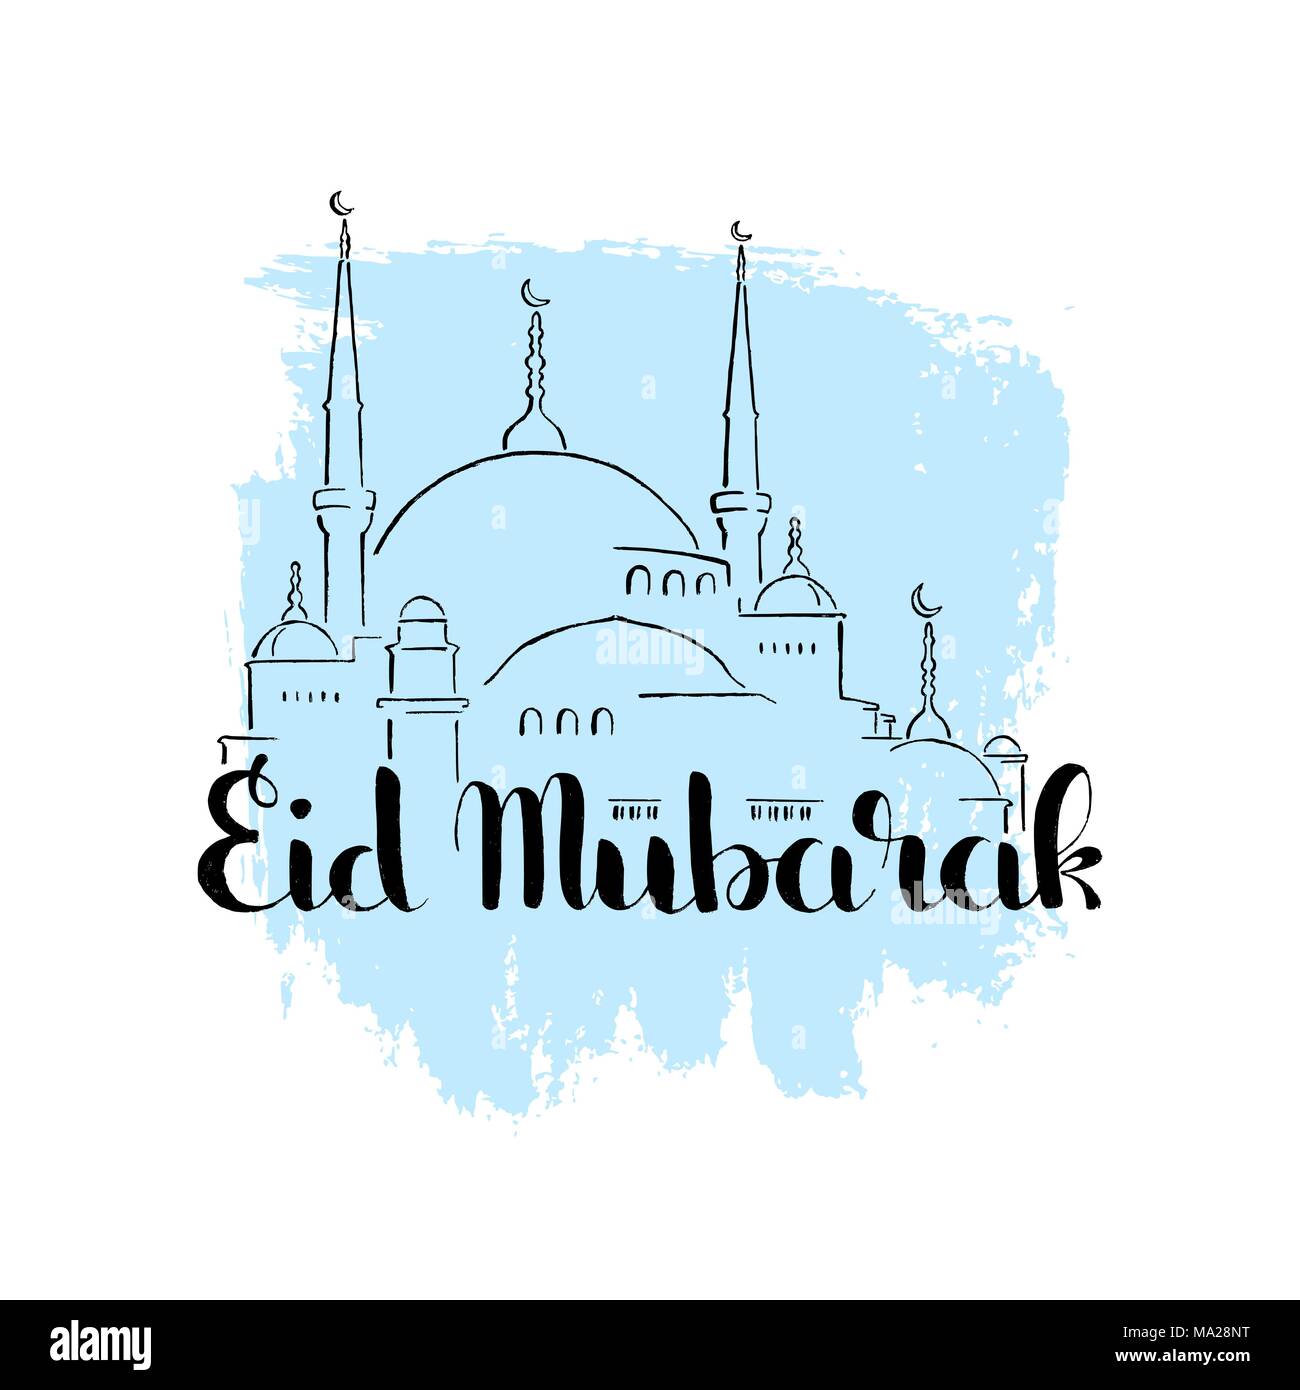 Eid Mubarak caratteri scritti a mano. Tradizionale saluto musulmano che significa - hanno una Beata vacanza. Vettore moderno disegnato a mano con calligrafia moschea Illustrazione Vettoriale